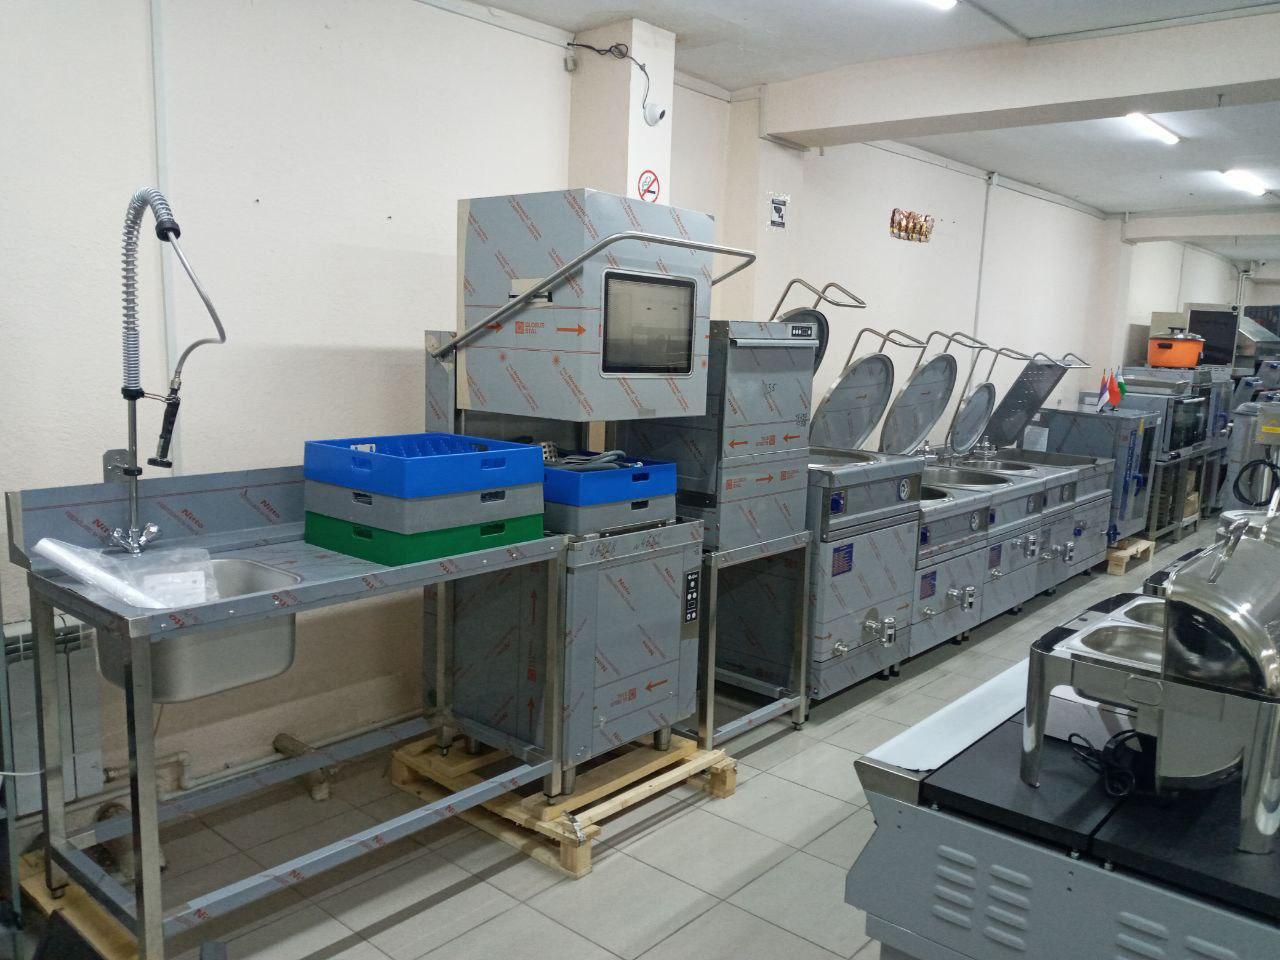 Профессиональное кухонное Оборудование в большом ассортименте, производство Россия и Китай со склада в Ташкенте